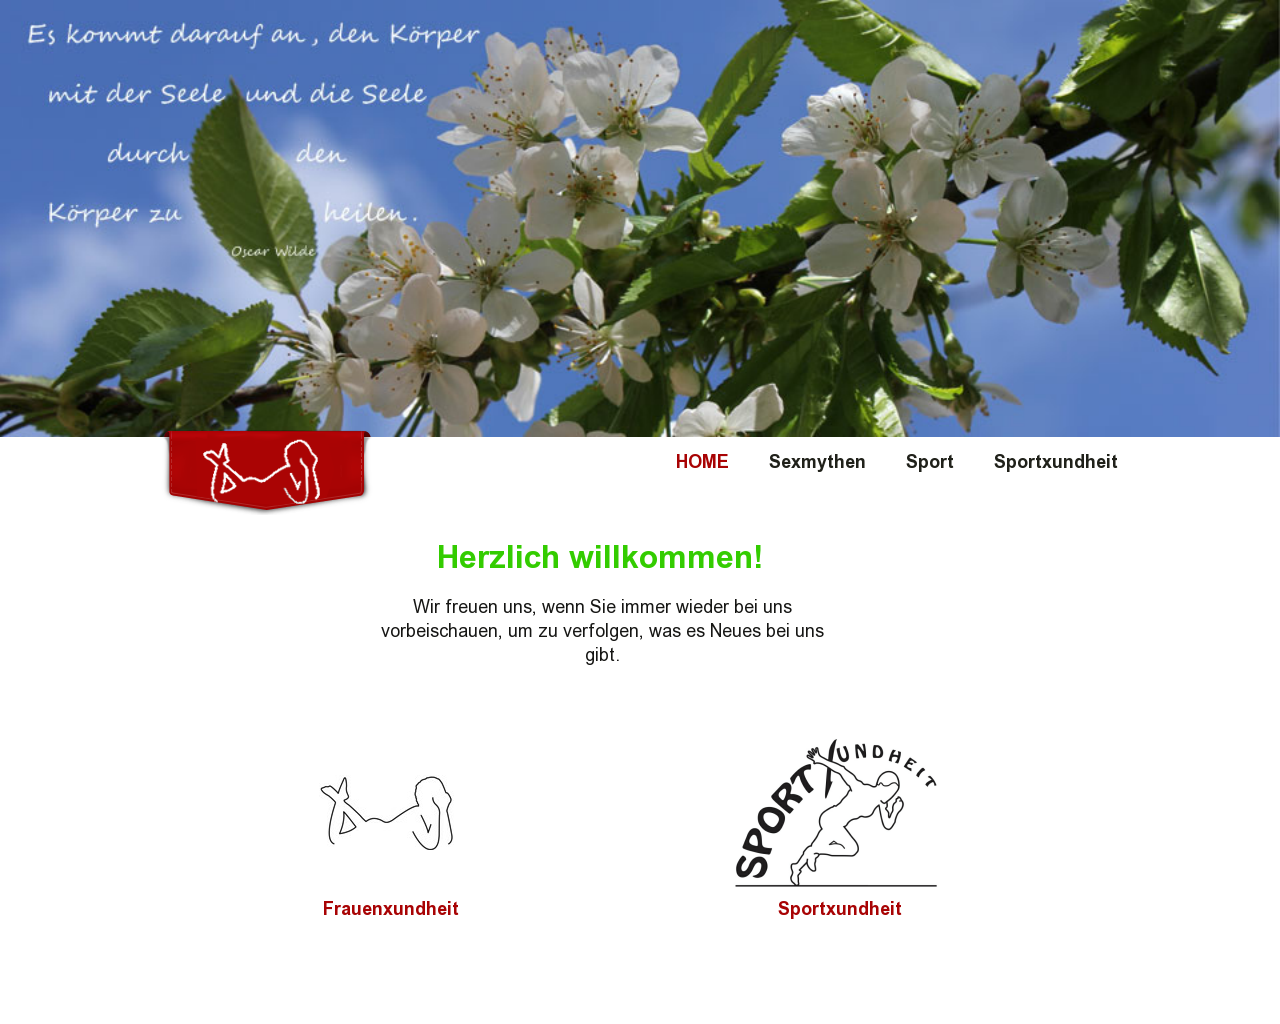 Bild Website frauenxundheit.at in 1280x1024